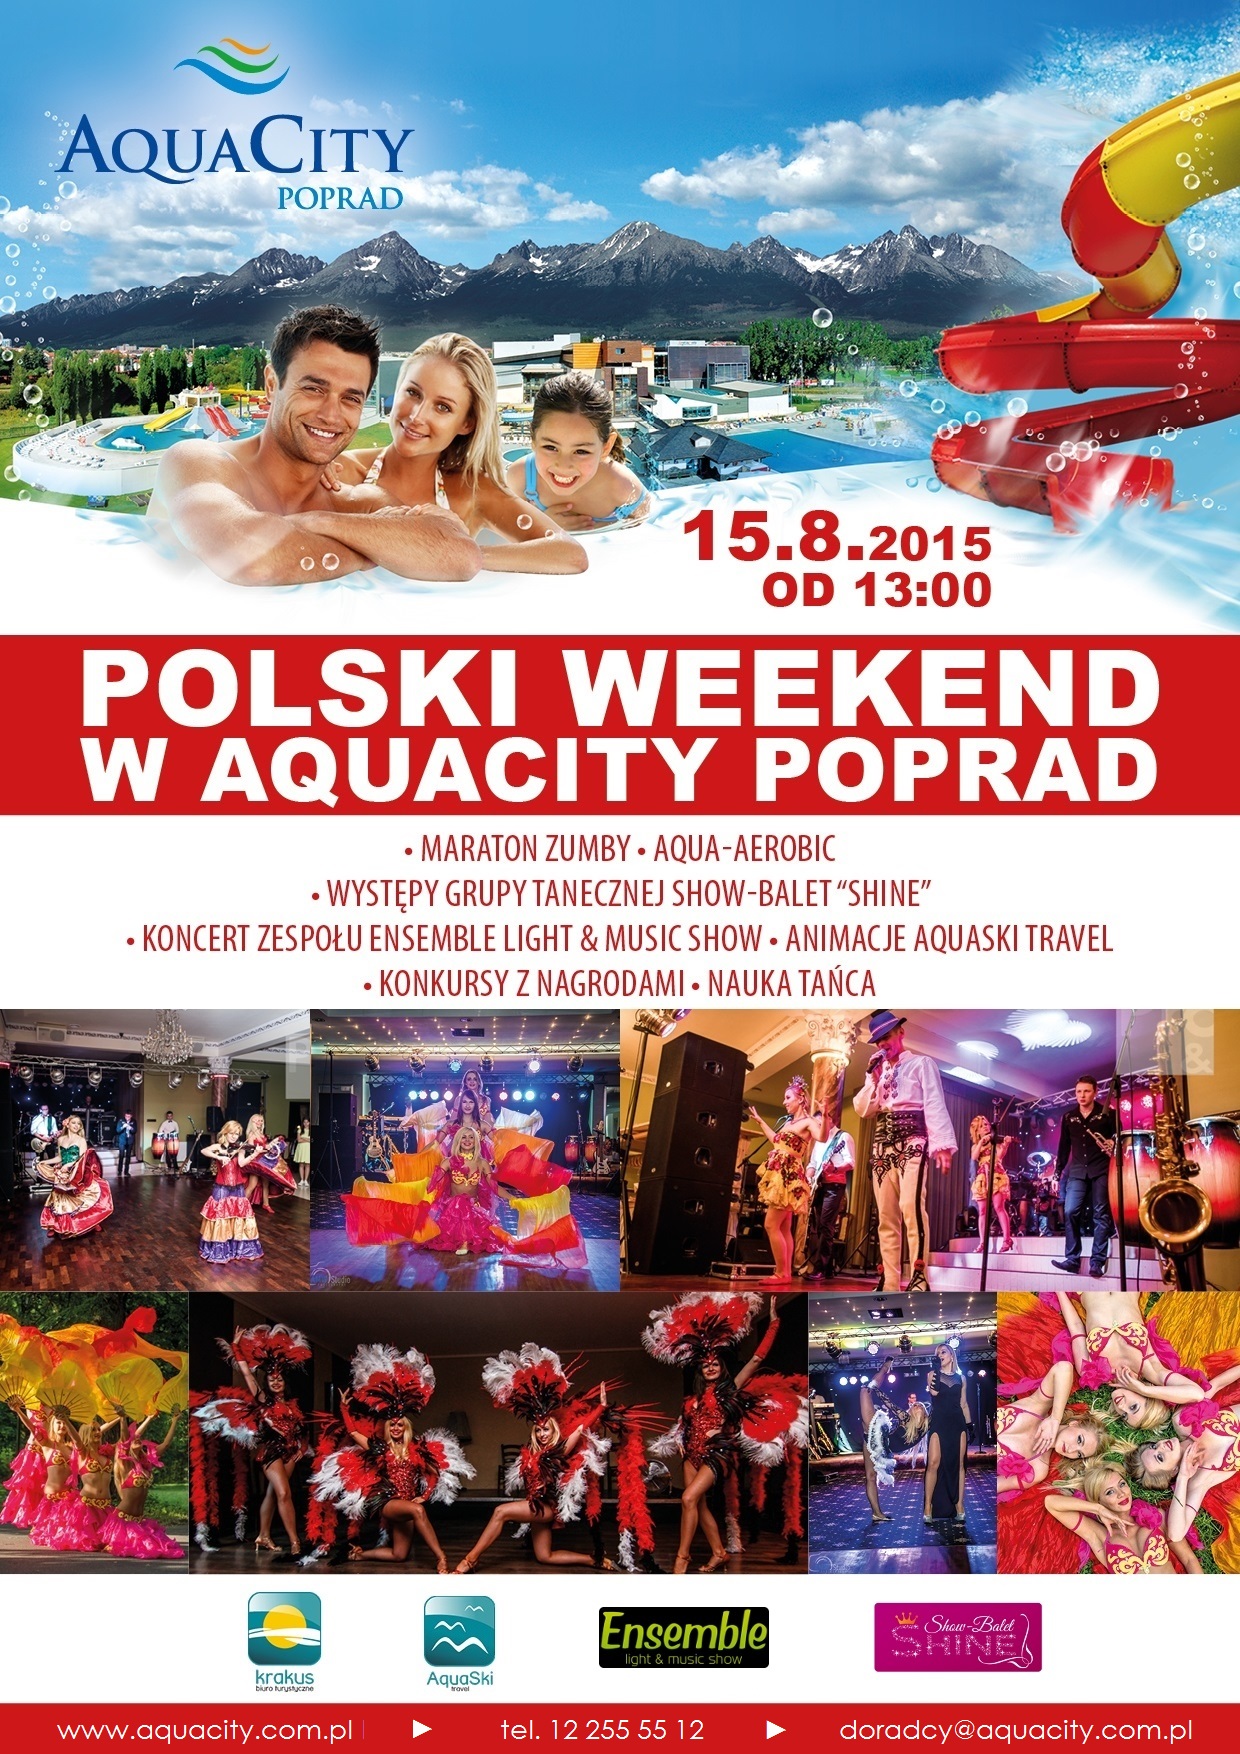 Polski weekend AquaCity Poprad